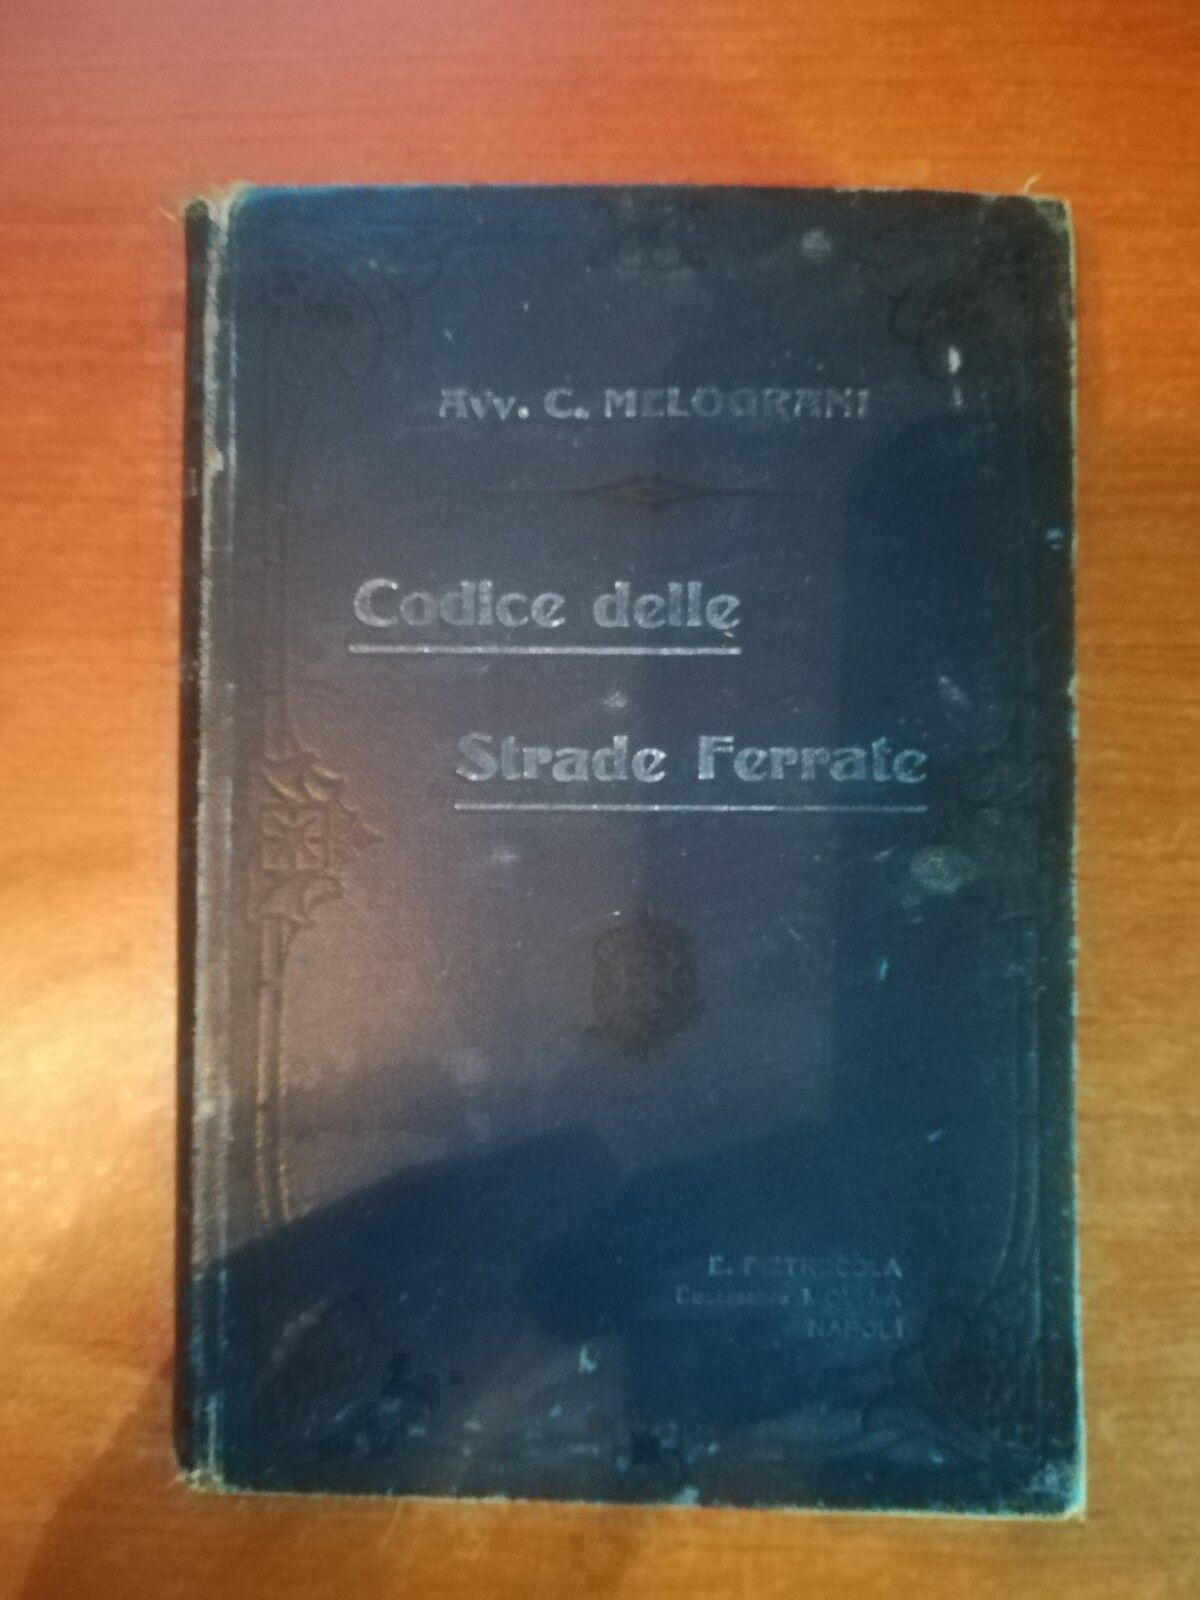 Codice delle strade ferrate -Avv. Carlo Melograni - Pietrocola - 1909- M